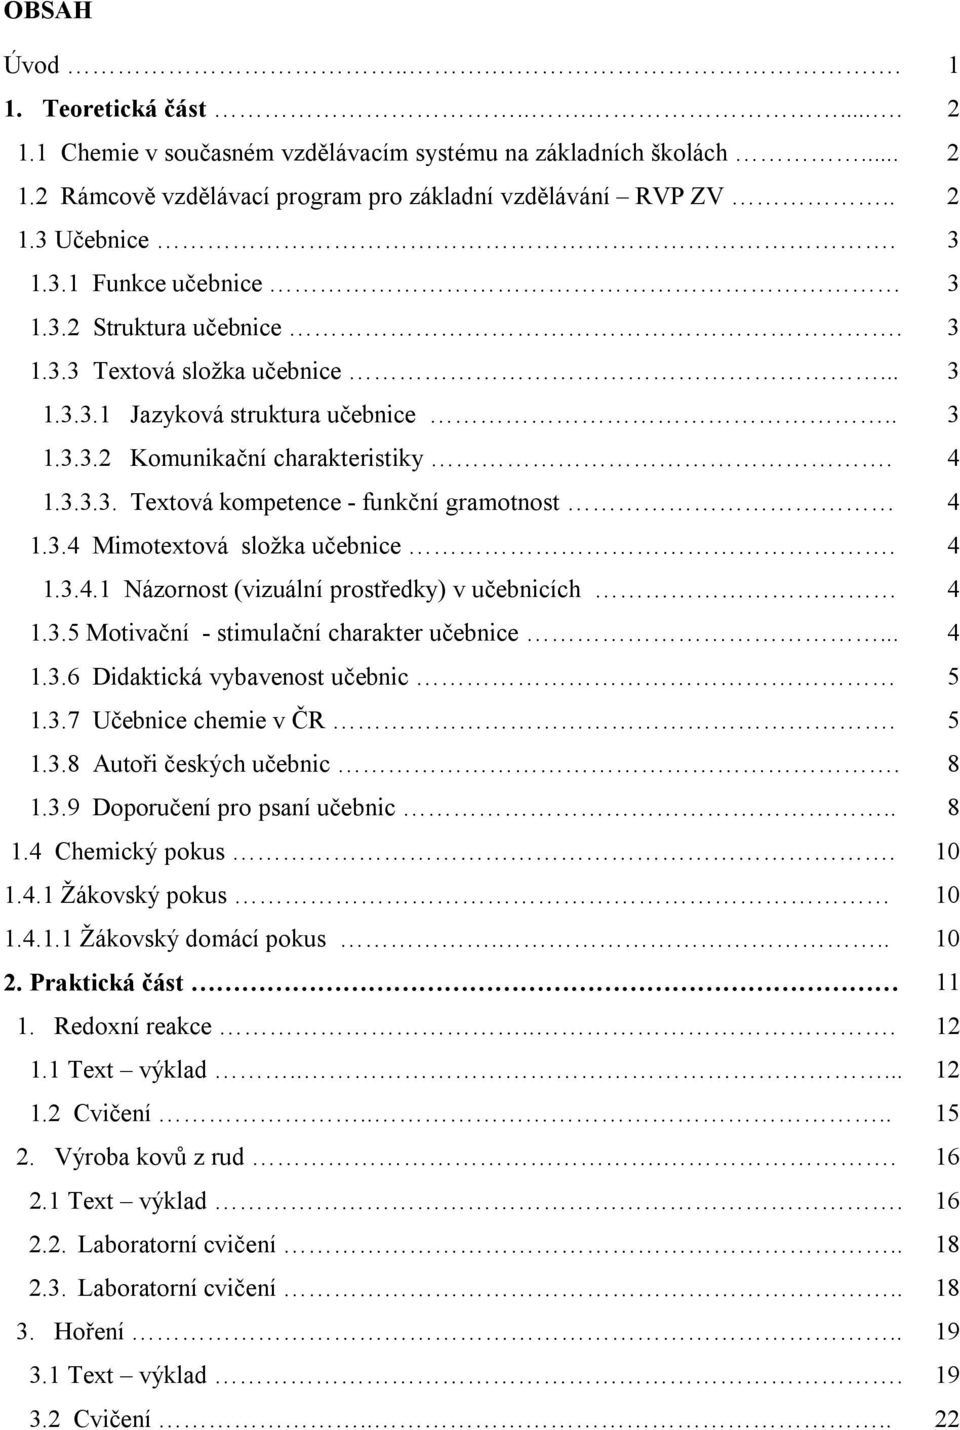 3.4 Mimotextová složka učebnice. 4 1.3.4.1 Názornost (vizuální prostředky) v učebnicích 4 1.3.5 Motivační - stimulační charakter učebnice... 4 1.3.6 Didaktická vybavenost učebnic 5 1.3.7 Učebnice chemie v ČR.